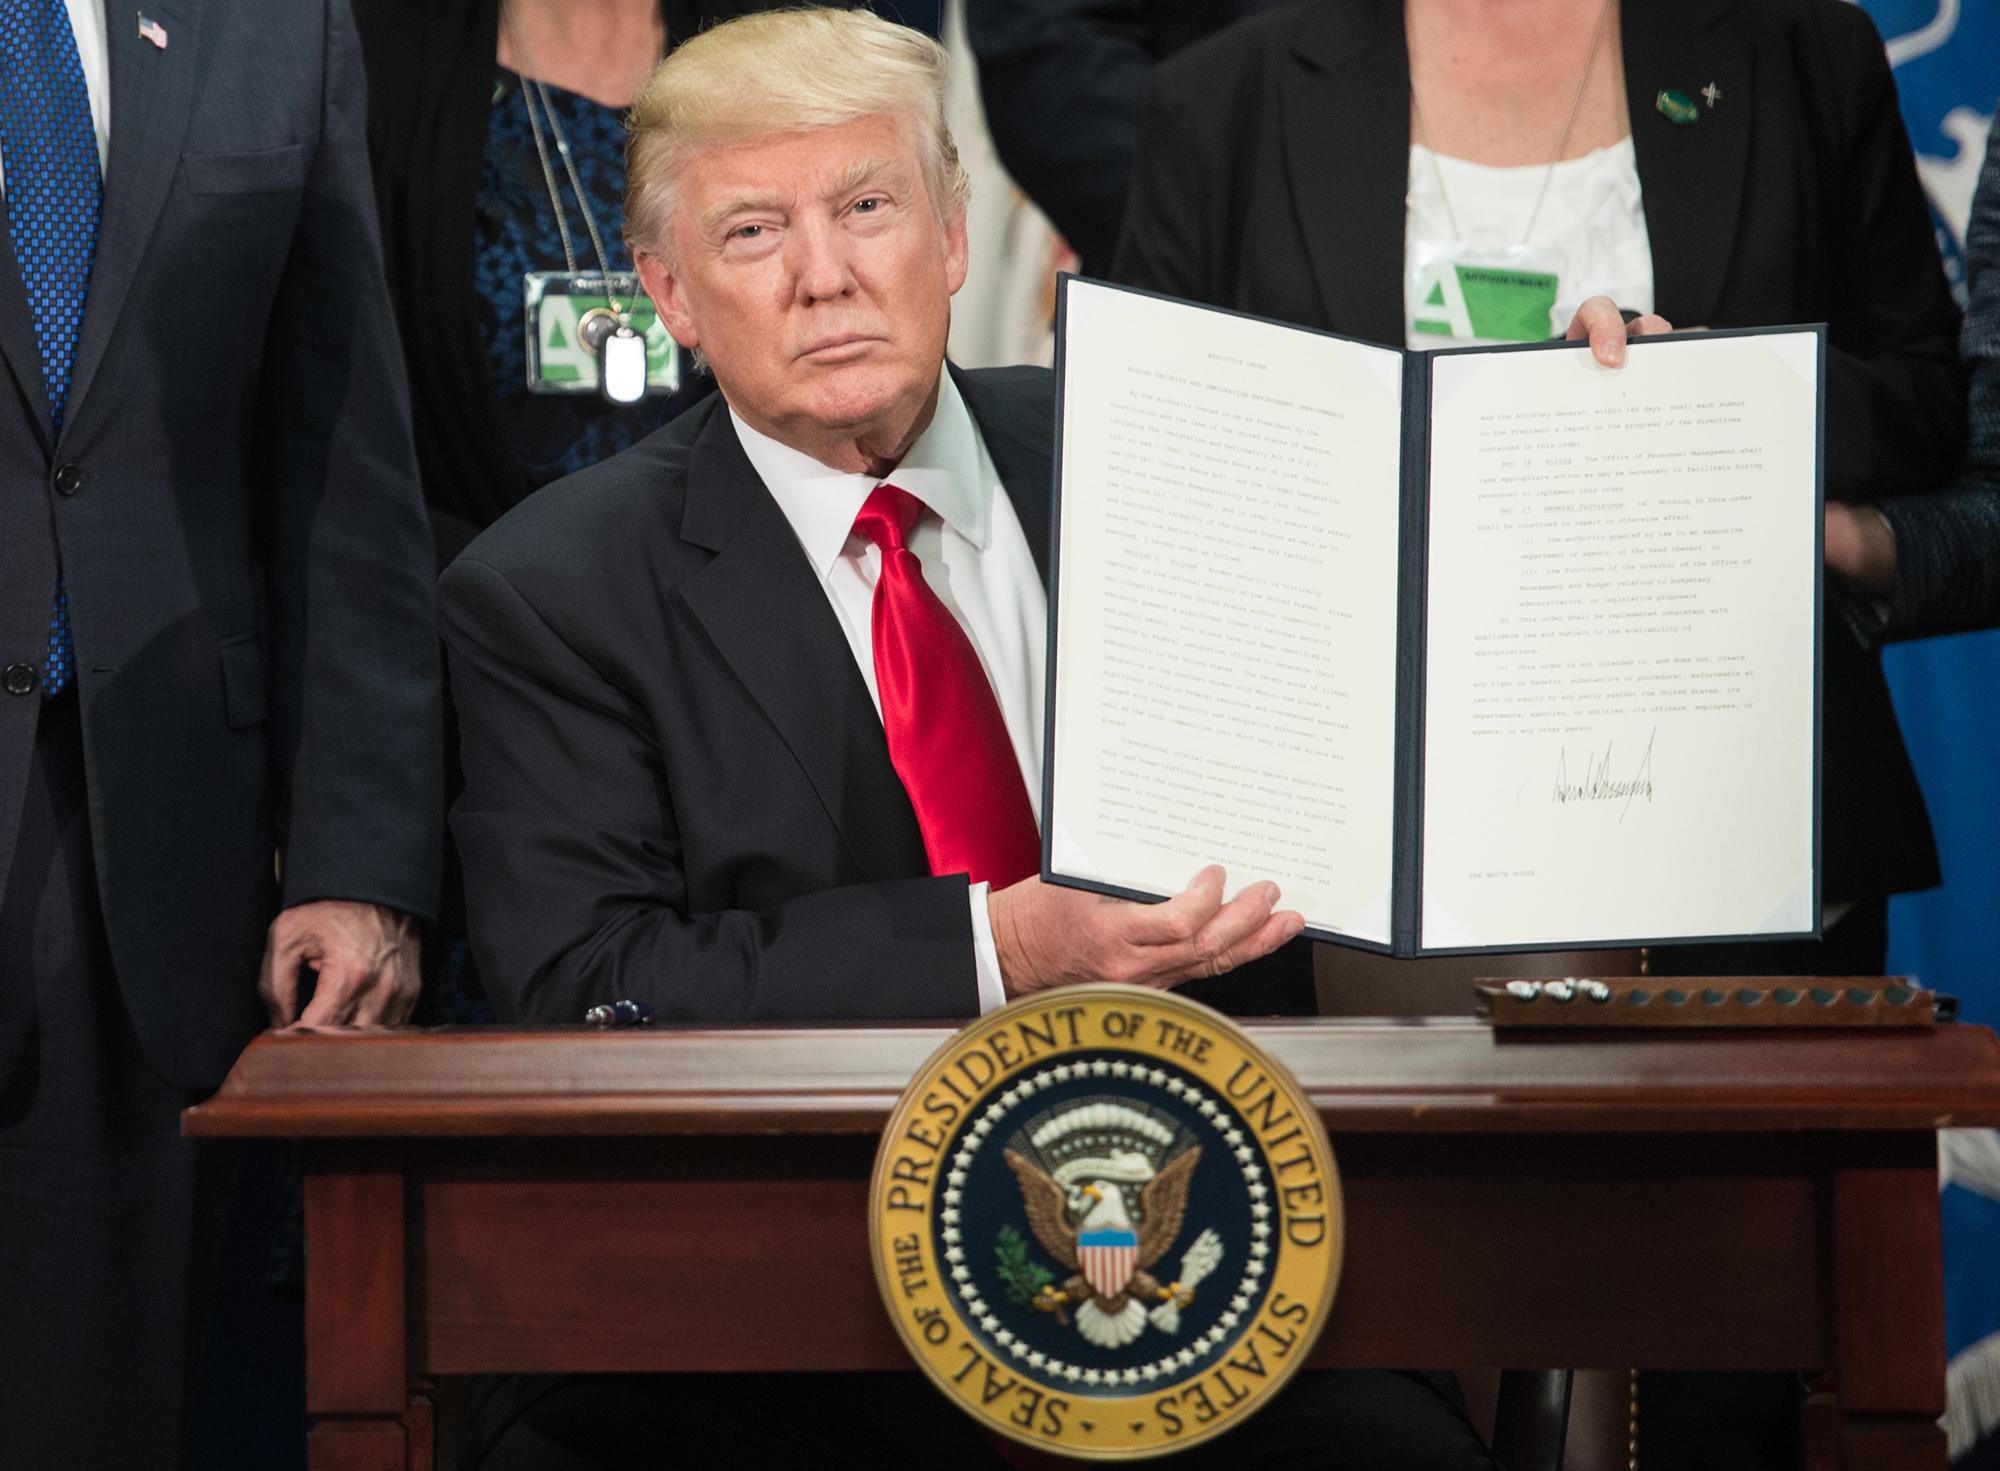 El presidente de Estados Unidos Donald Trump muestra a la prensa la orden ejecutiva firmada para la construcción del muro en la frontera sur de estados unidos. Enero 25 de 2017. Foto: Nicholas Kamm / AFP